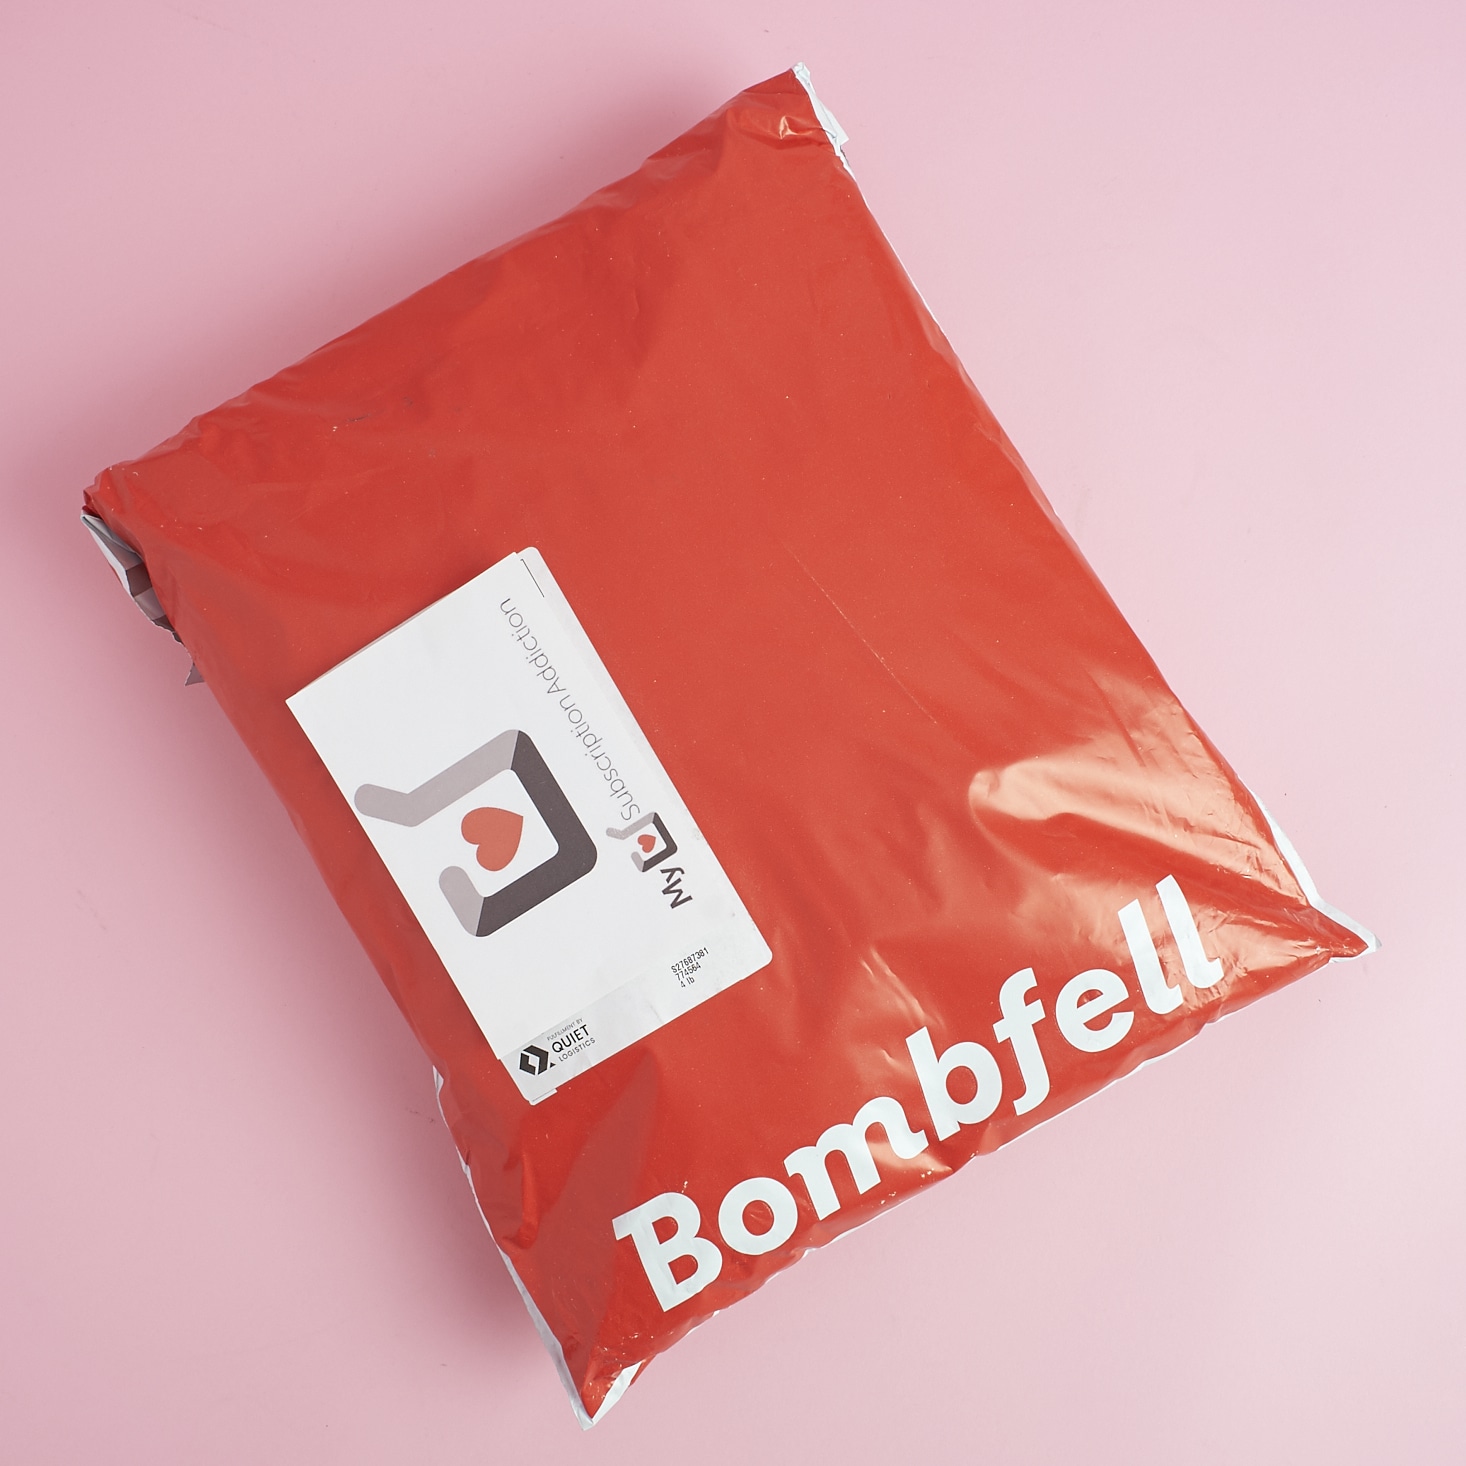 Bombfell Men’s Clothing Box Review + Coupon – May 2017